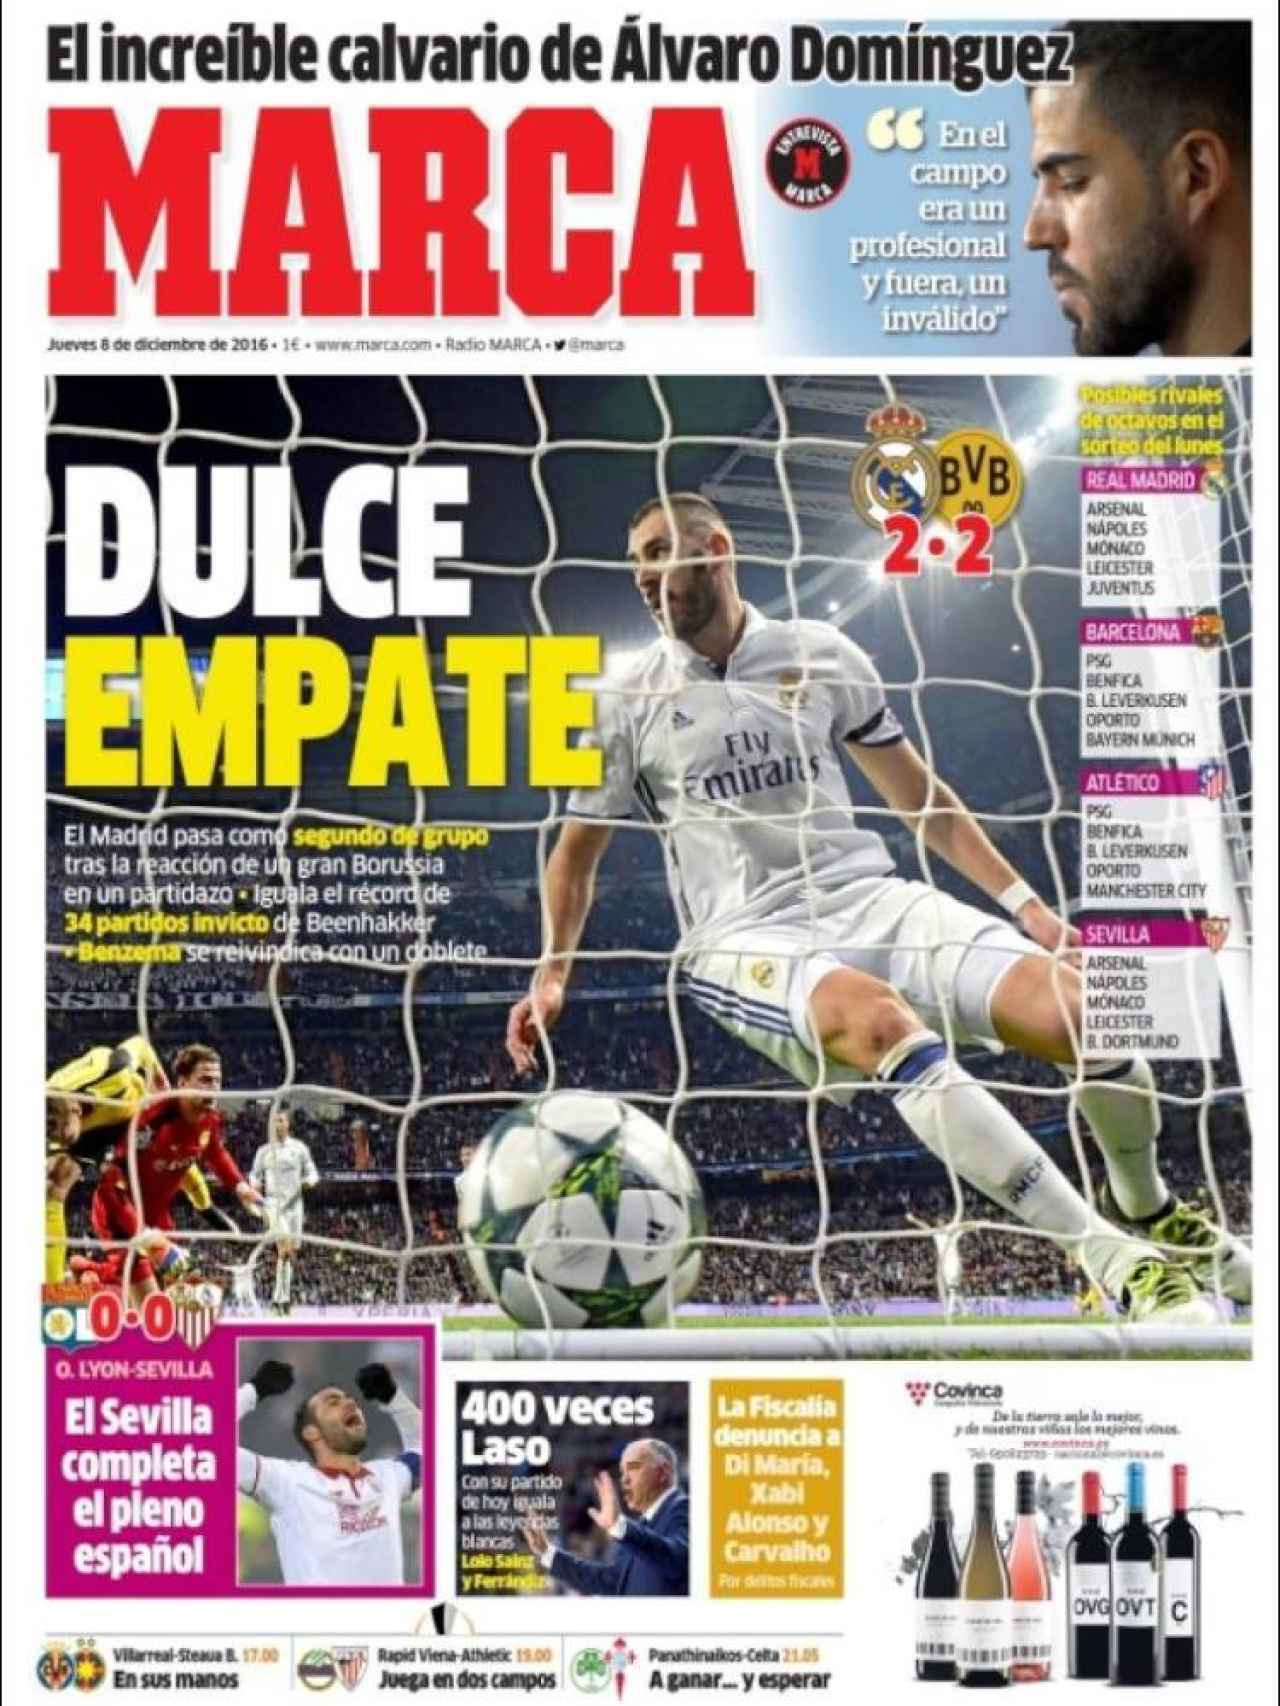 MARCA califica de dulce el empate del Real Madrid en Champions en su tapa de hoy.